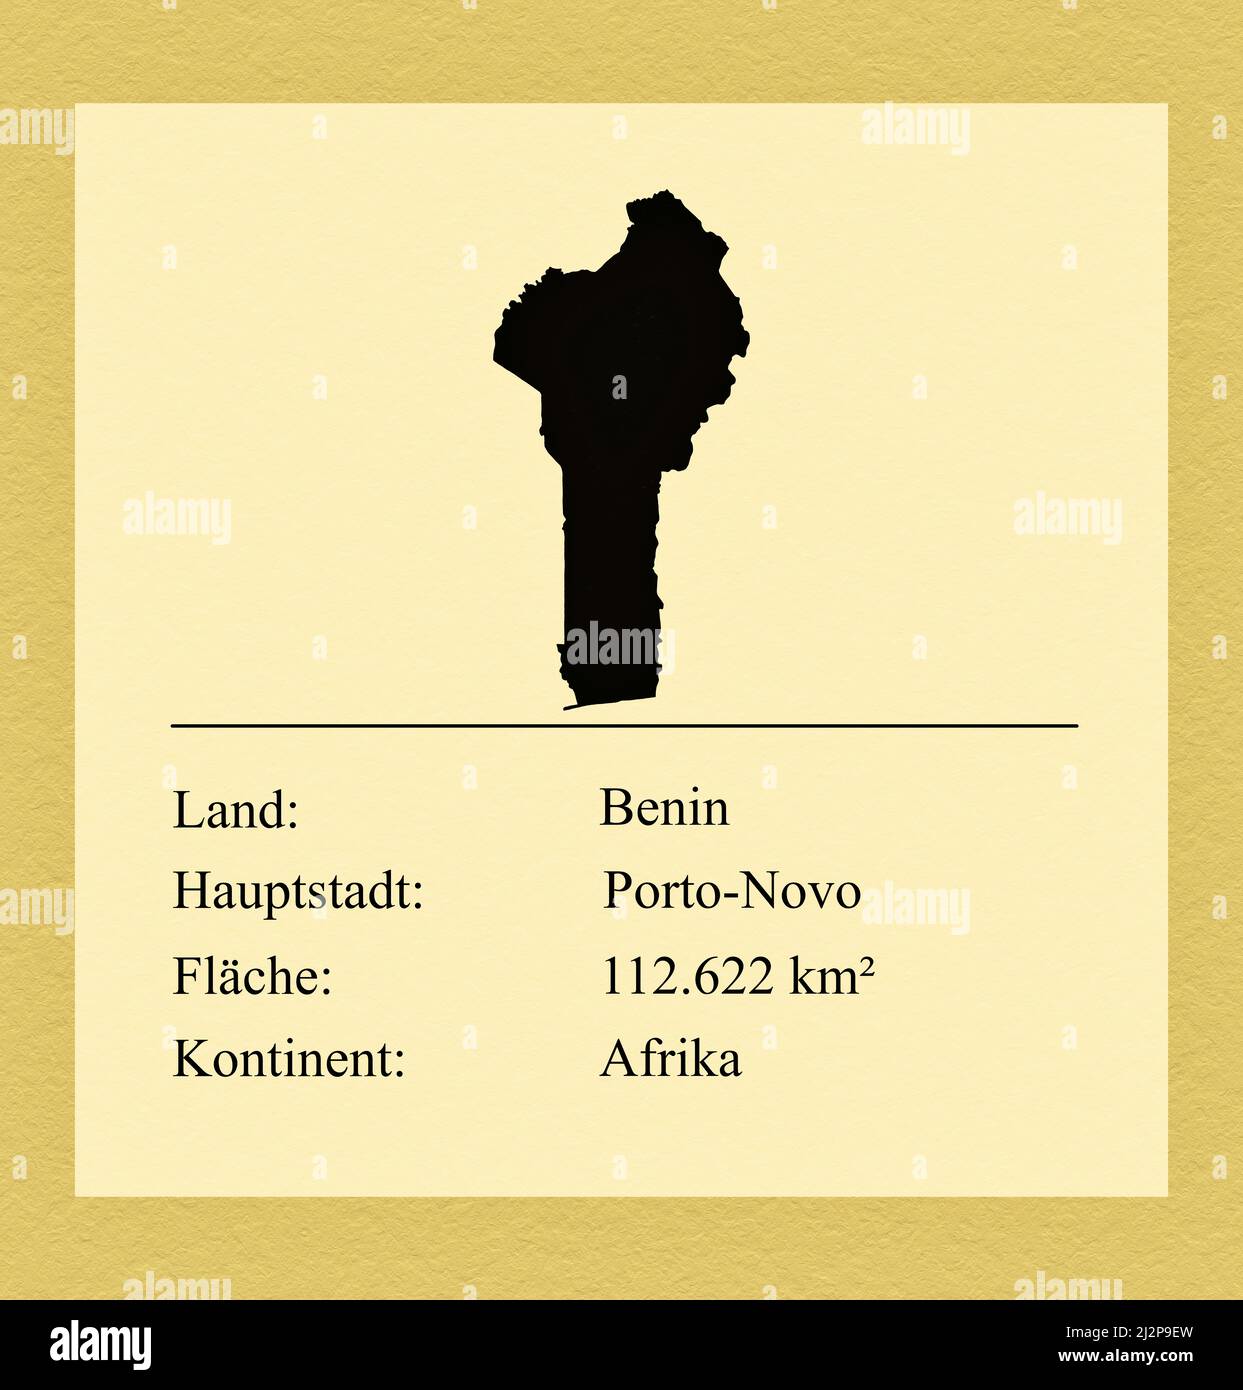 Umrisse des Landes Benin, darunter ein kleiner Steckbrief mit Ländernamen, Hauptstadt, Fläche und Kontinent Stock Photo